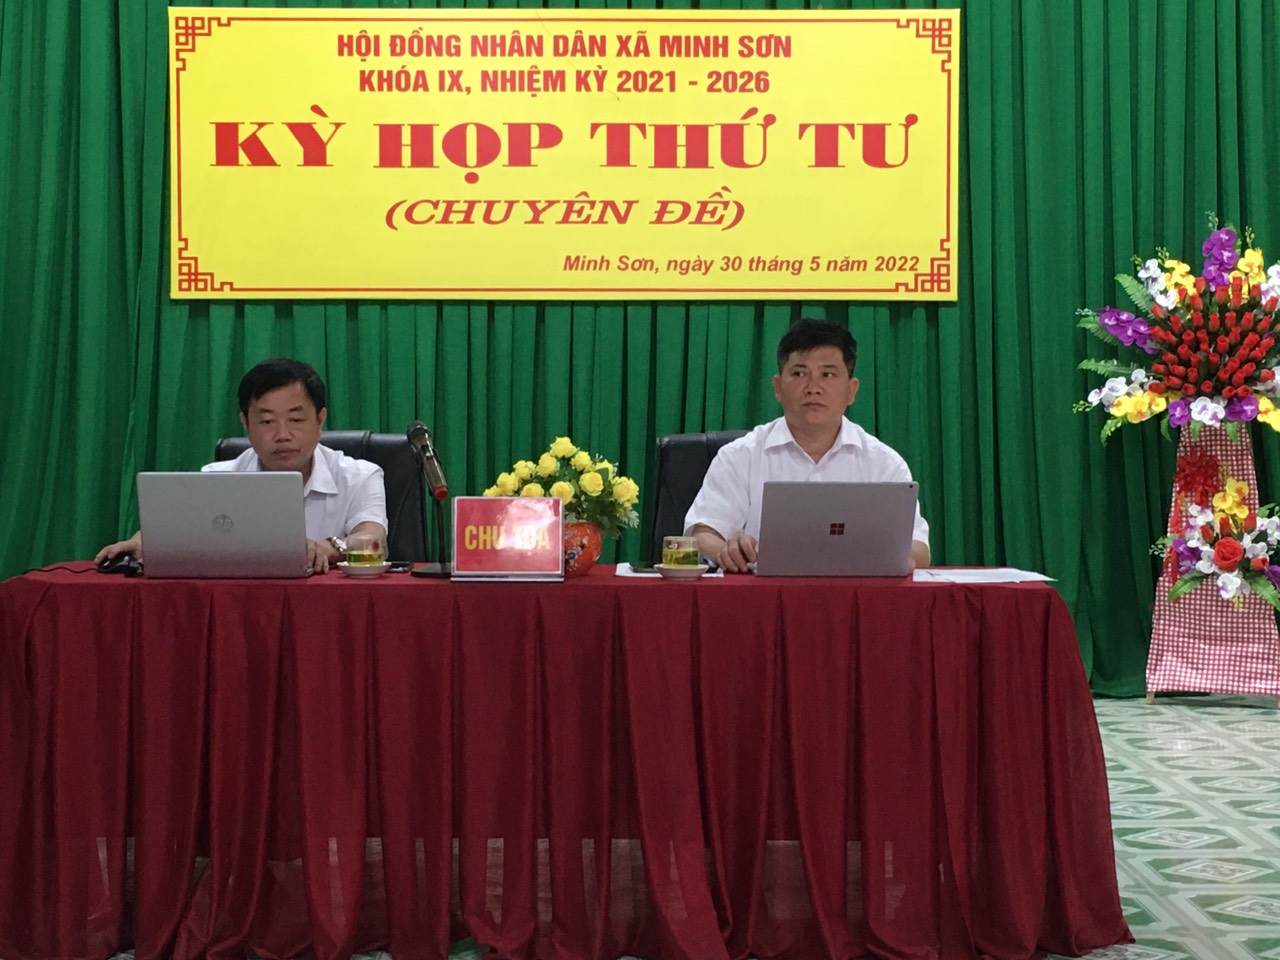 HĐND xã Minh Sơn khóa IX tổ chức kỳ họp chuyên đề, điều chỉnh quy hoạch chung xây dựng xã Minh Sơn, huyện Bắc Mê, tỉnh Hà Giang